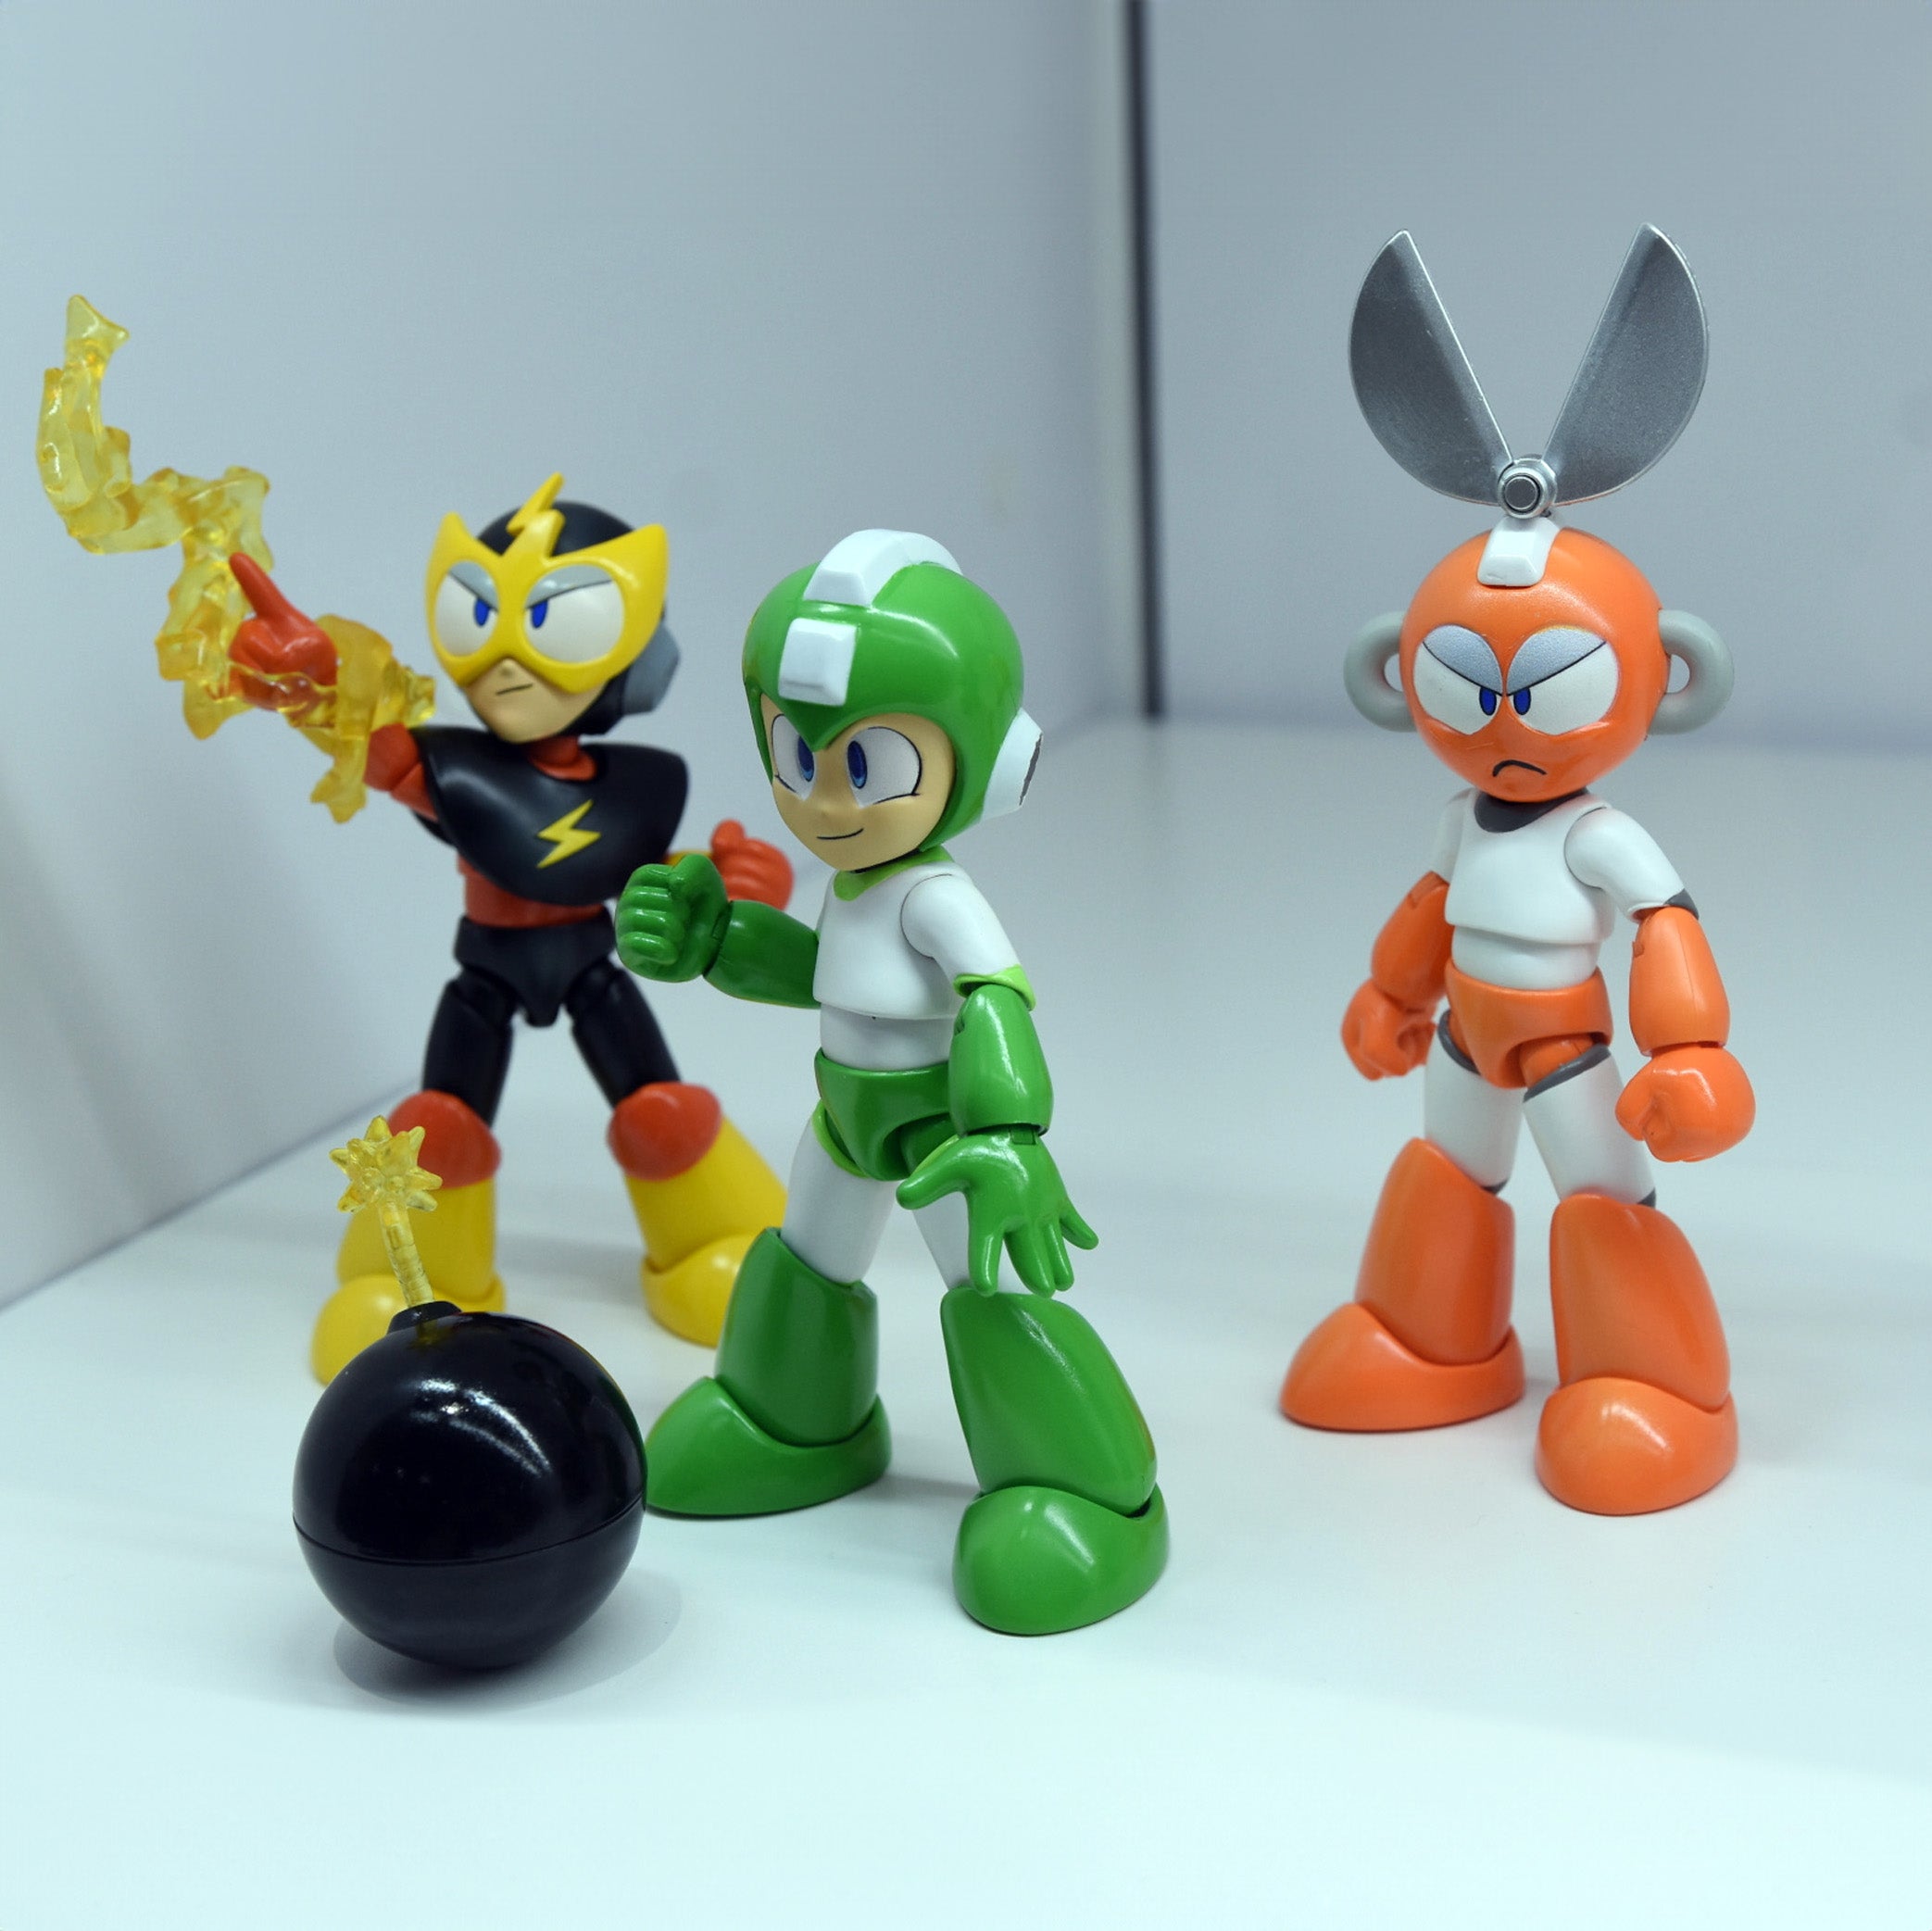 Jada Toys - Mega Man (Rockman) - Hyper Bomb Mega Man (4.5") - Marvelous Toys